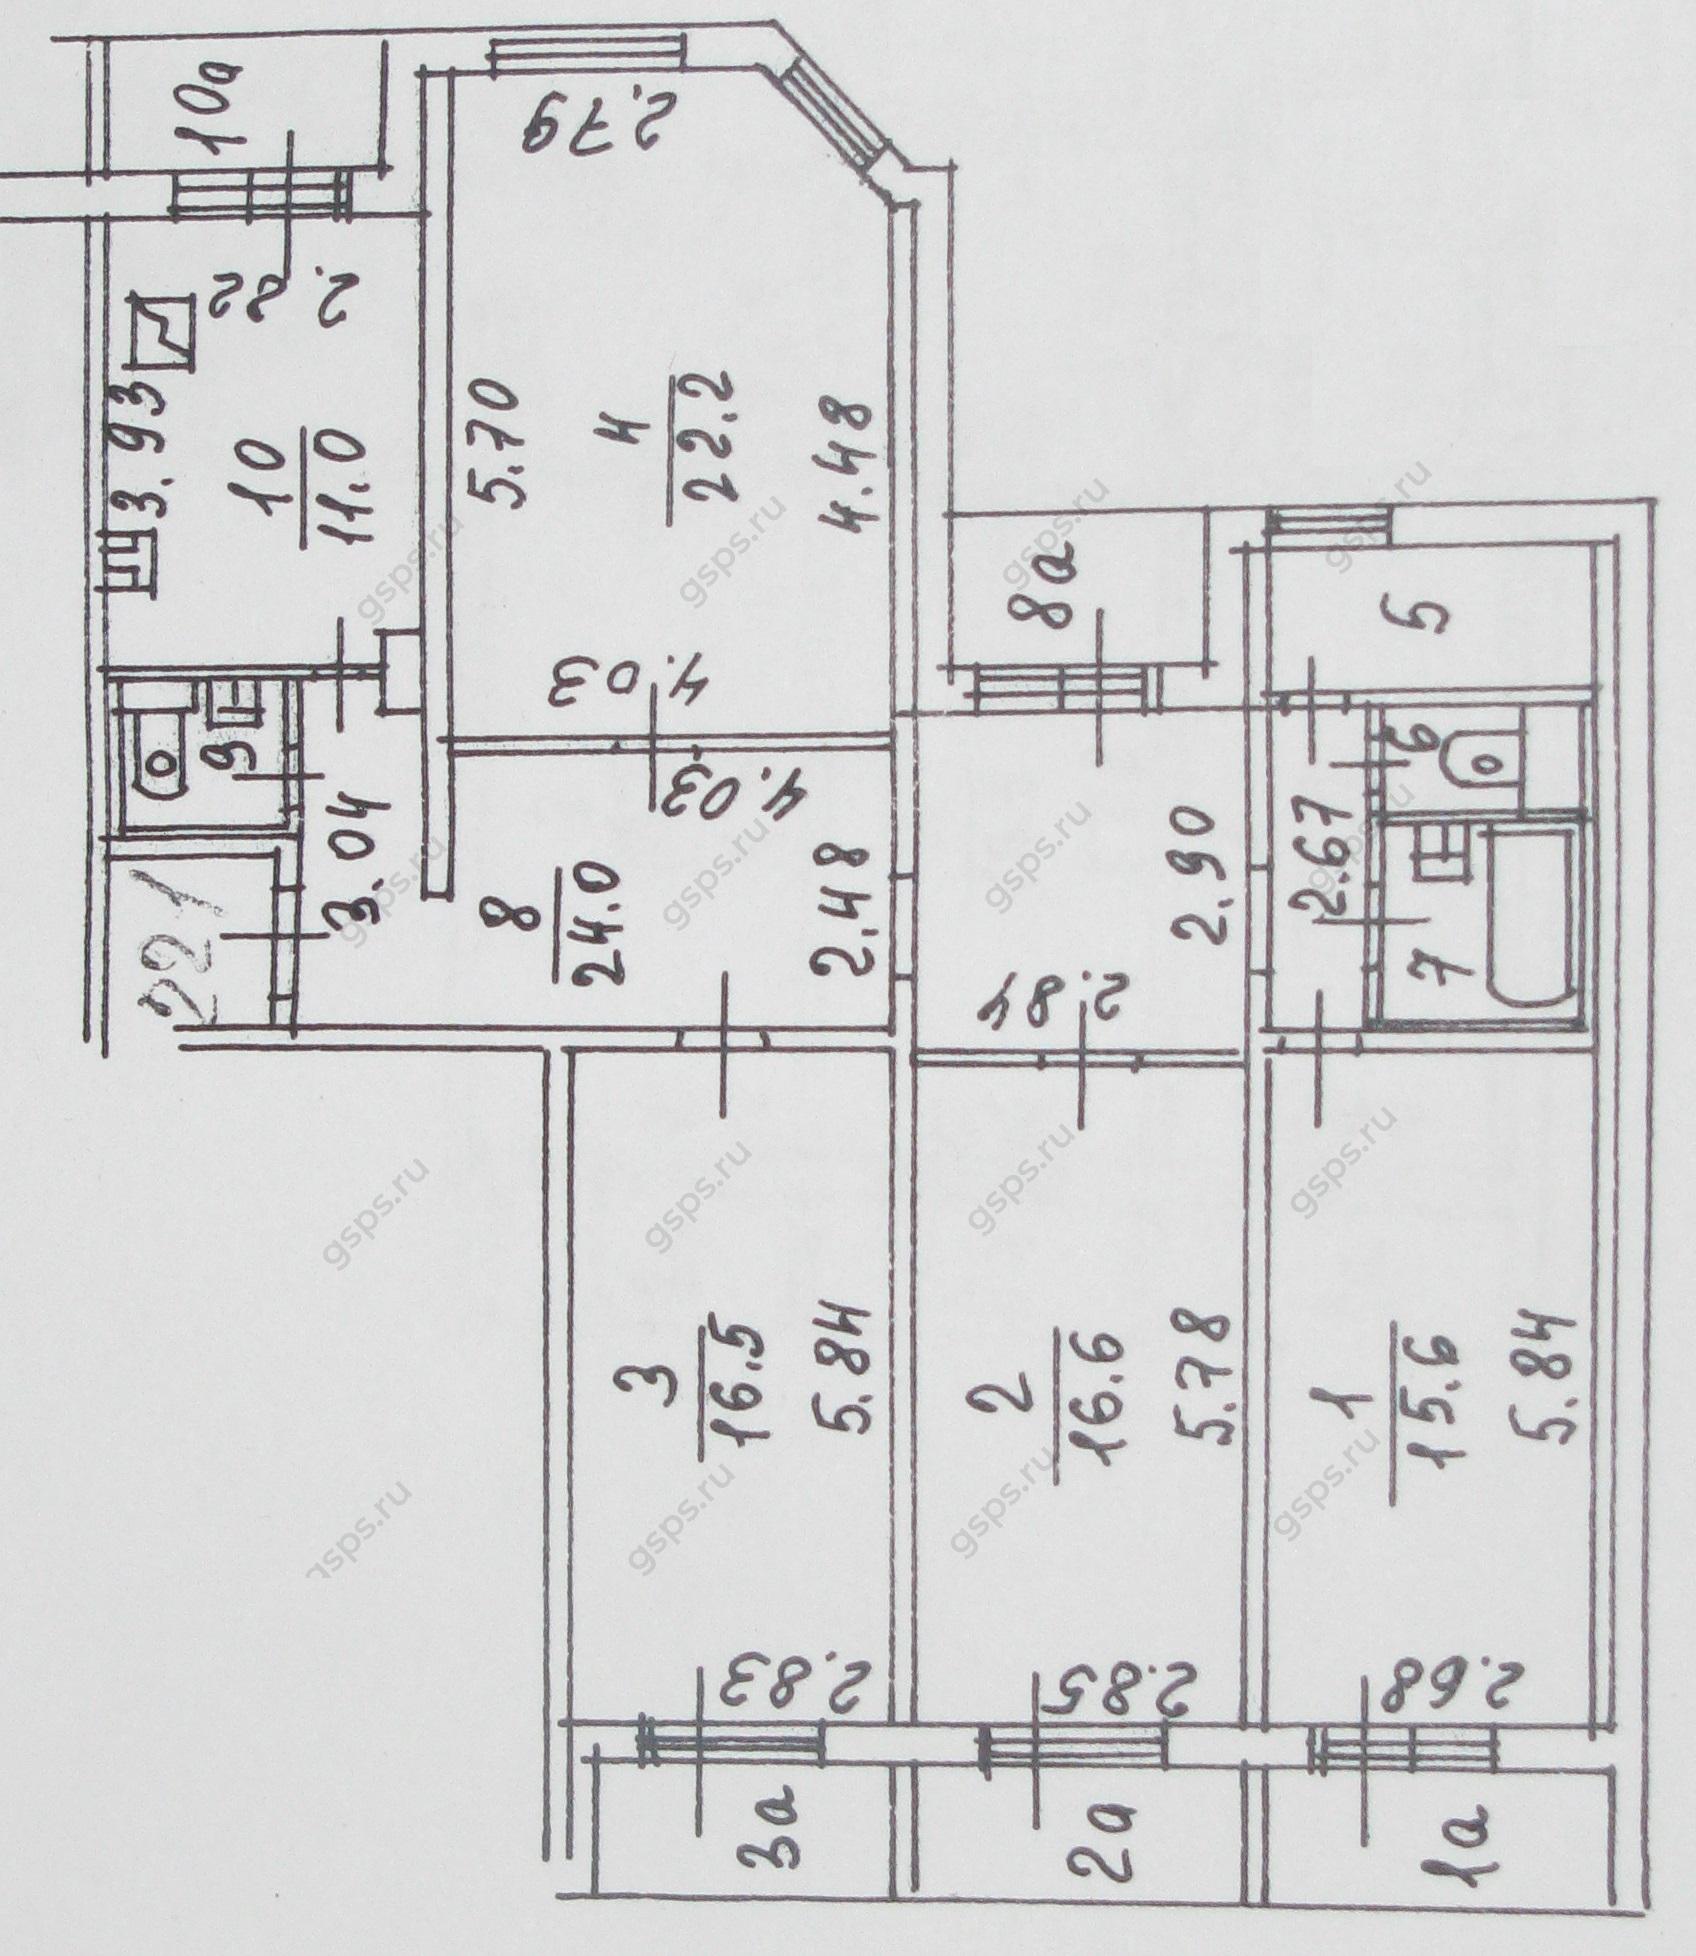 БТИ 4-х комнатной квартиры серии П55М